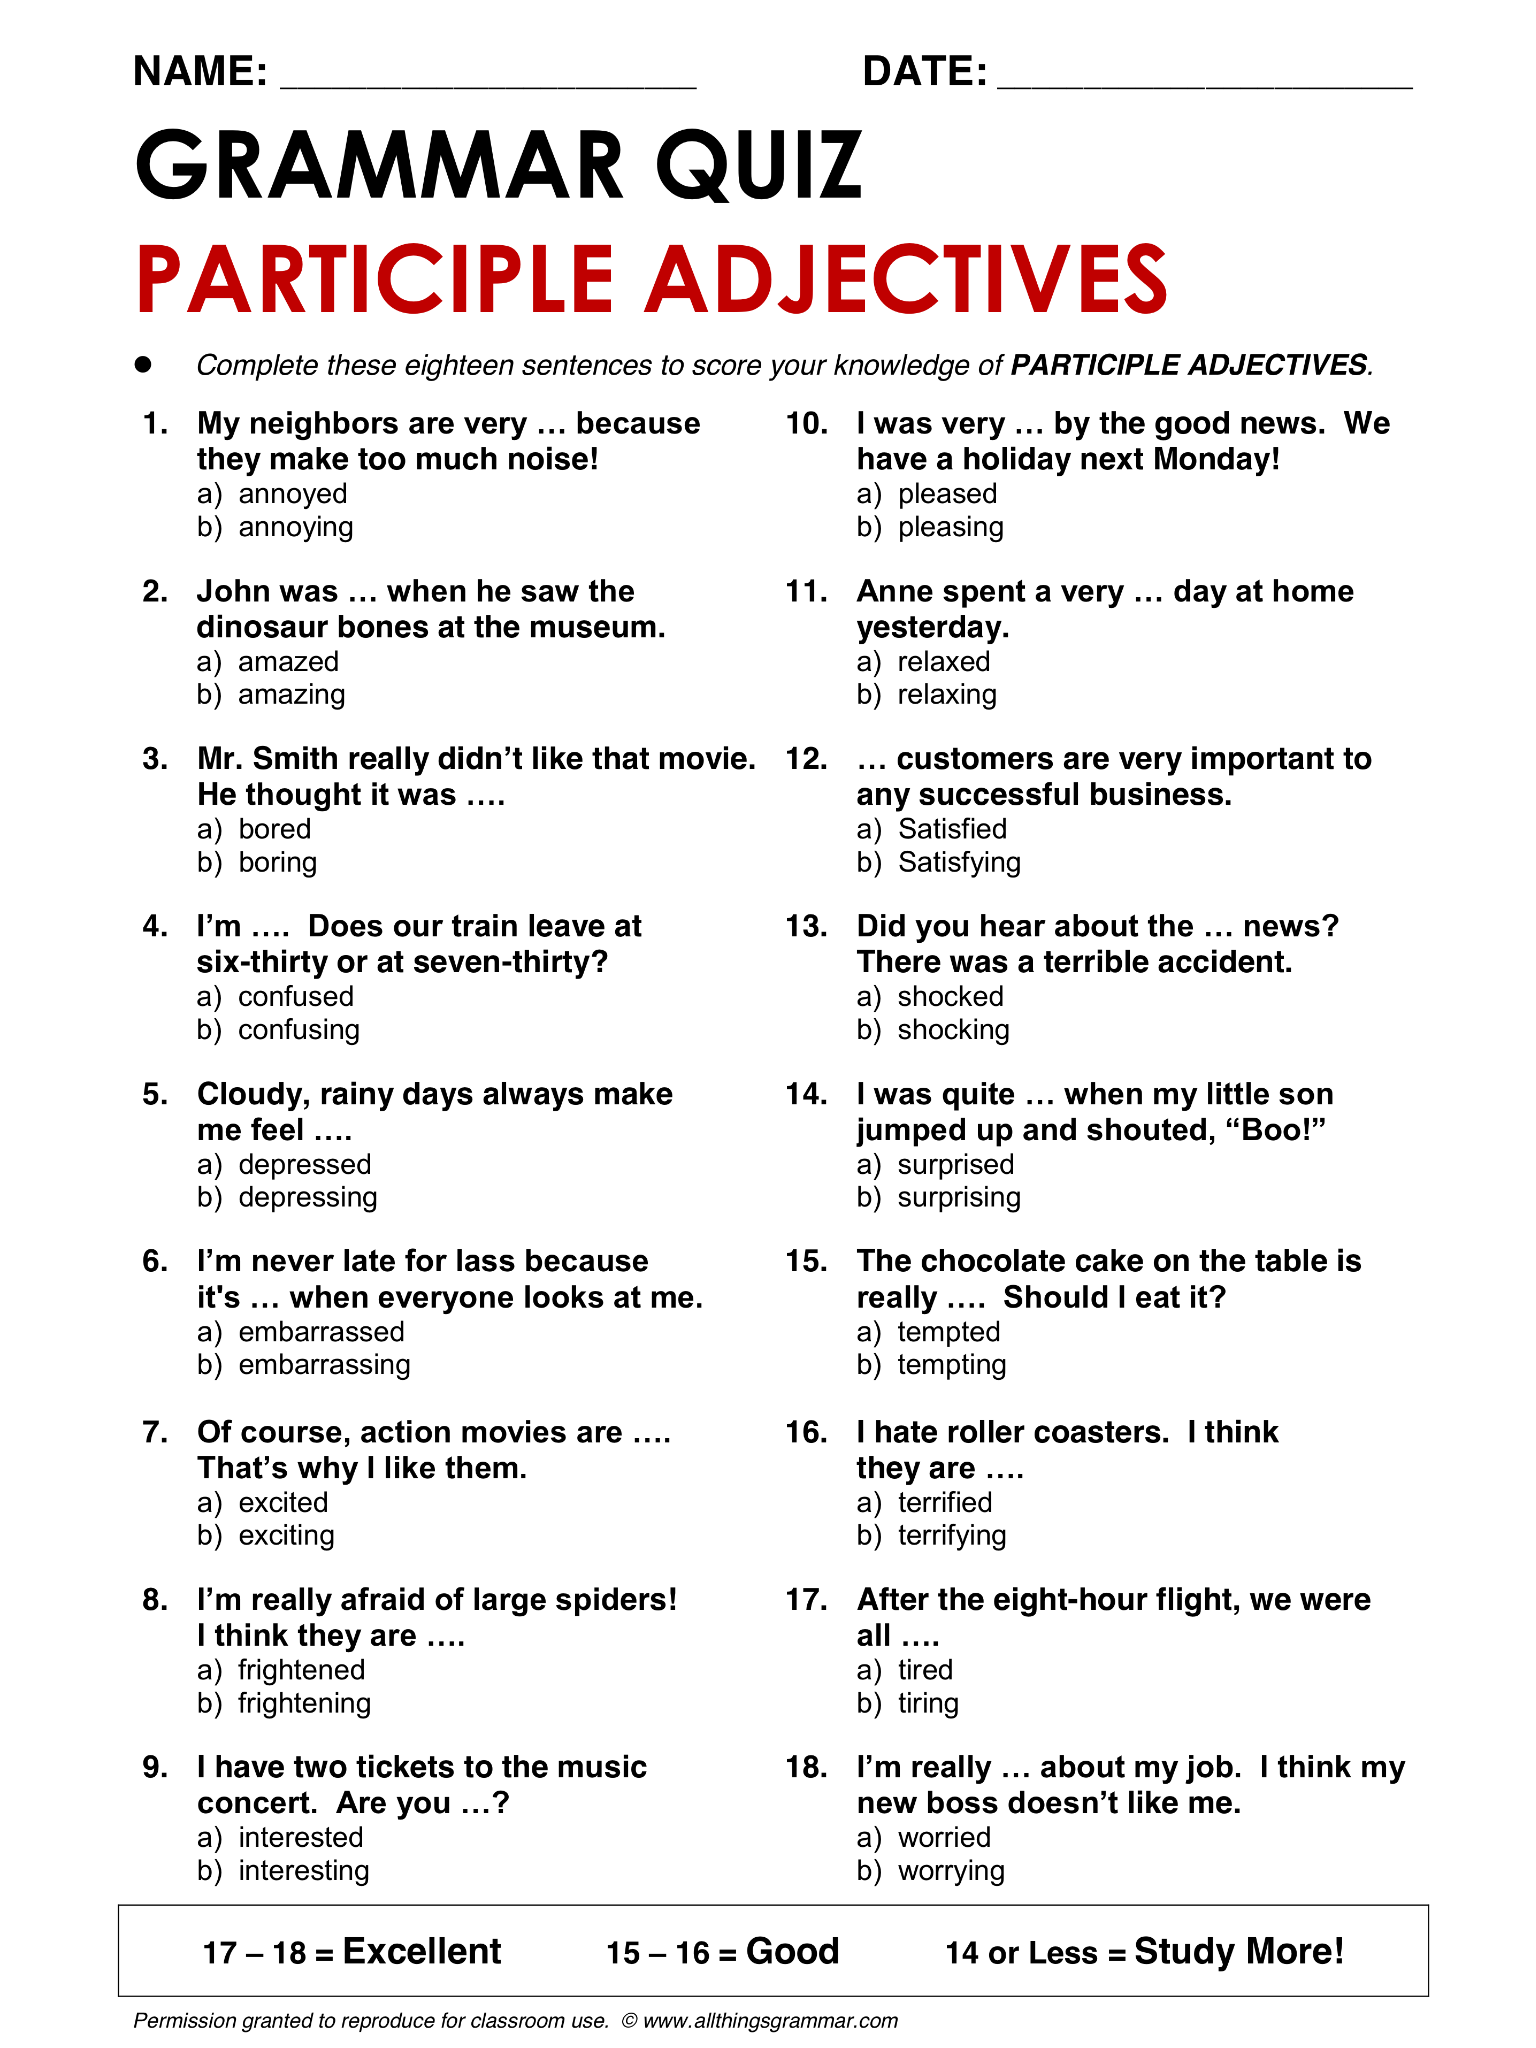 English Grammar Participle Adjectives Www allthingsgrammar